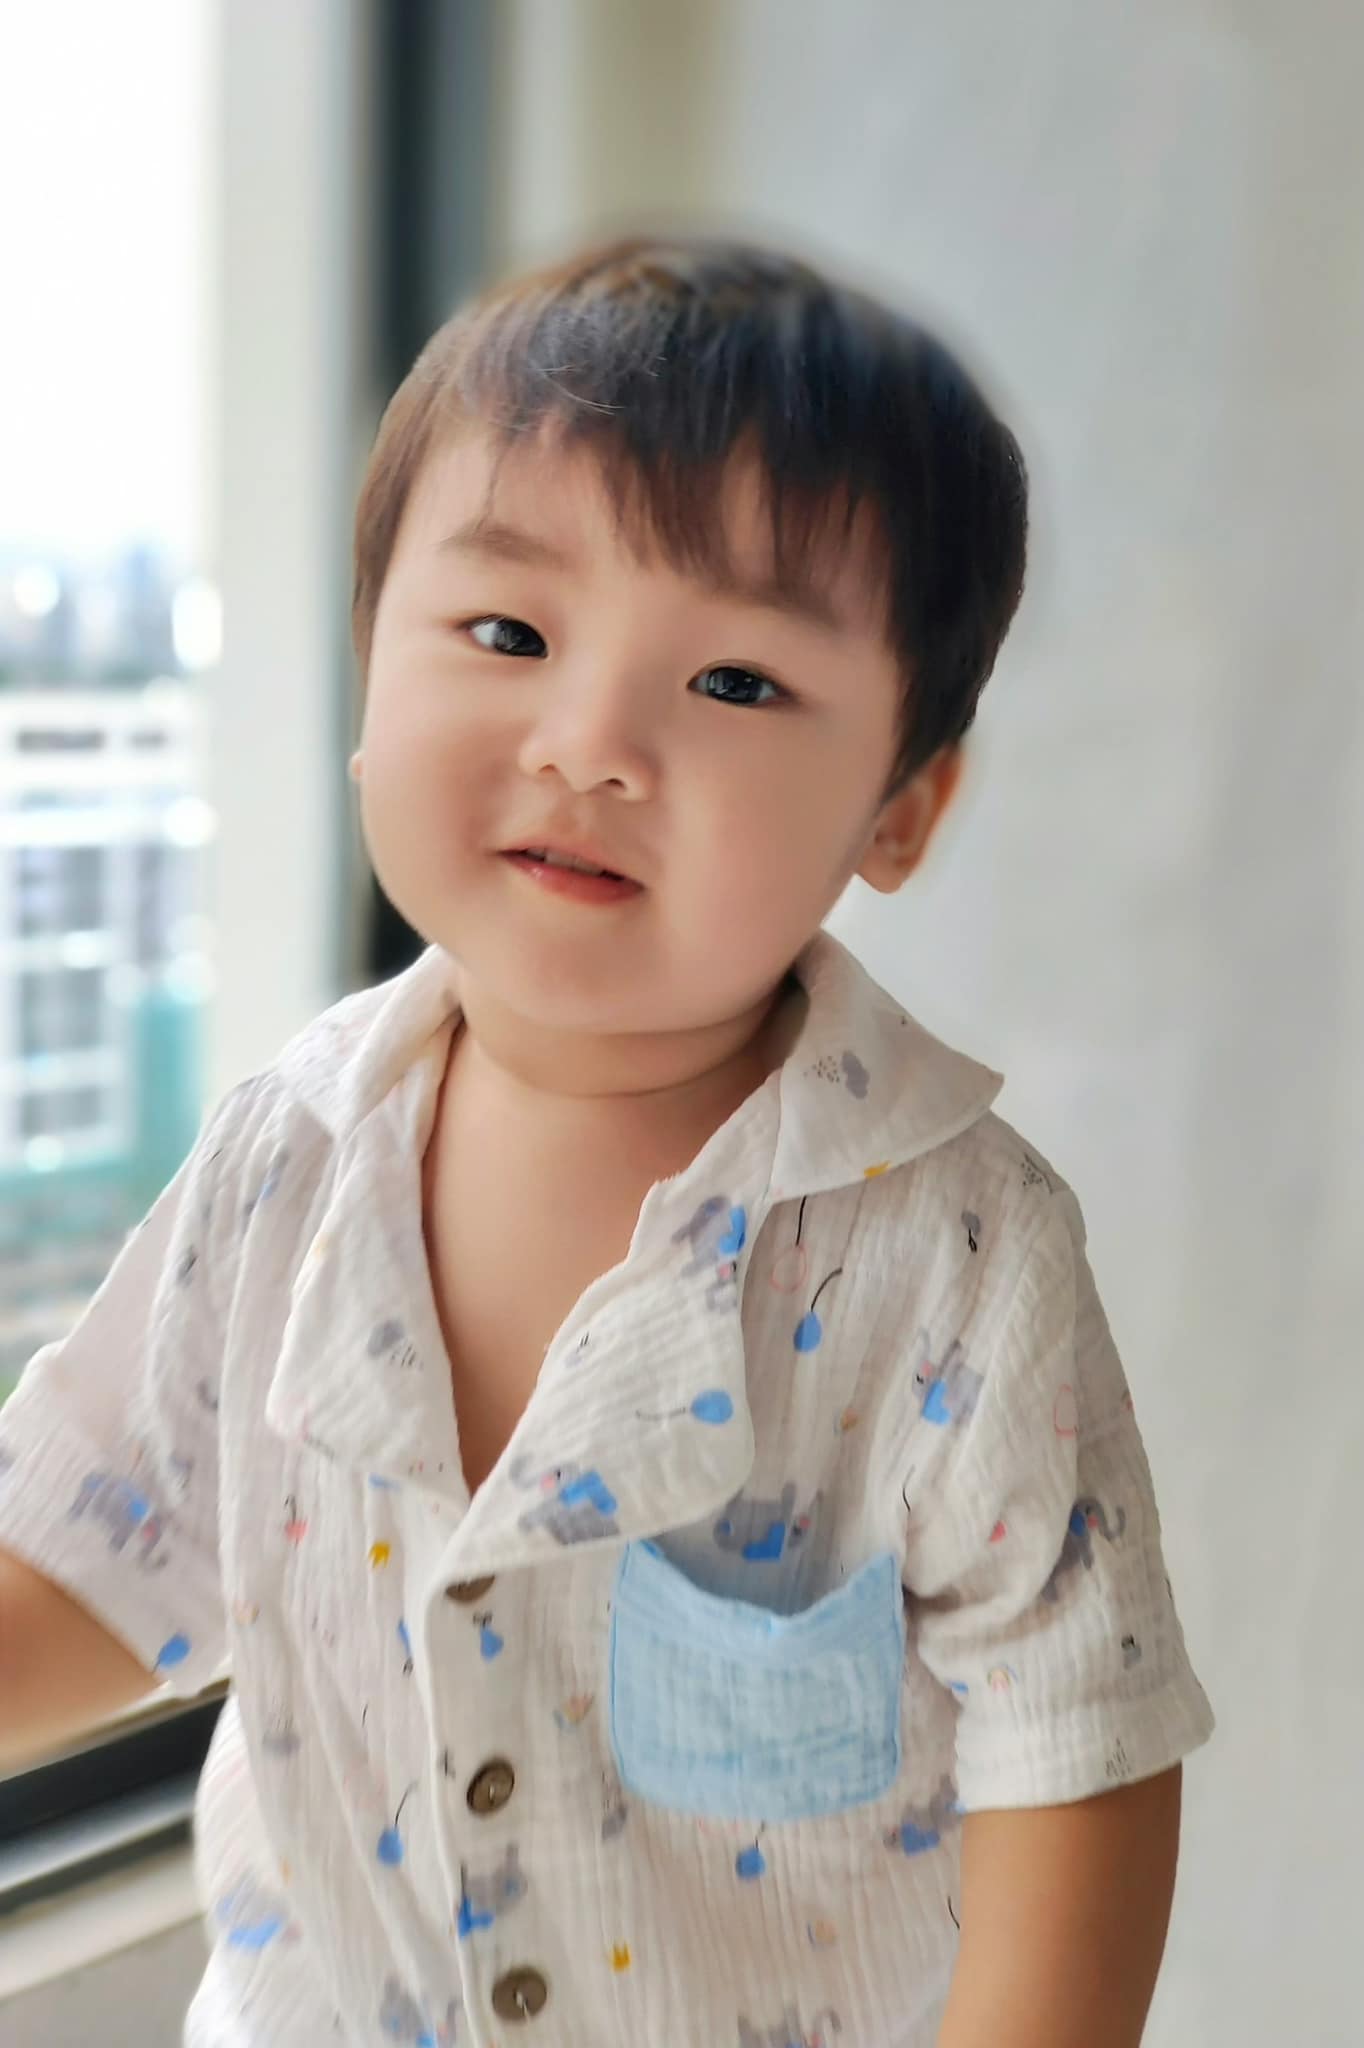 Con trai Hòa Minzy 21 tháng tuổi đã biết nói 'Hạnh phúc khi có mẹ' khiến ai nấy đều 'rụng tim' - ảnh 3